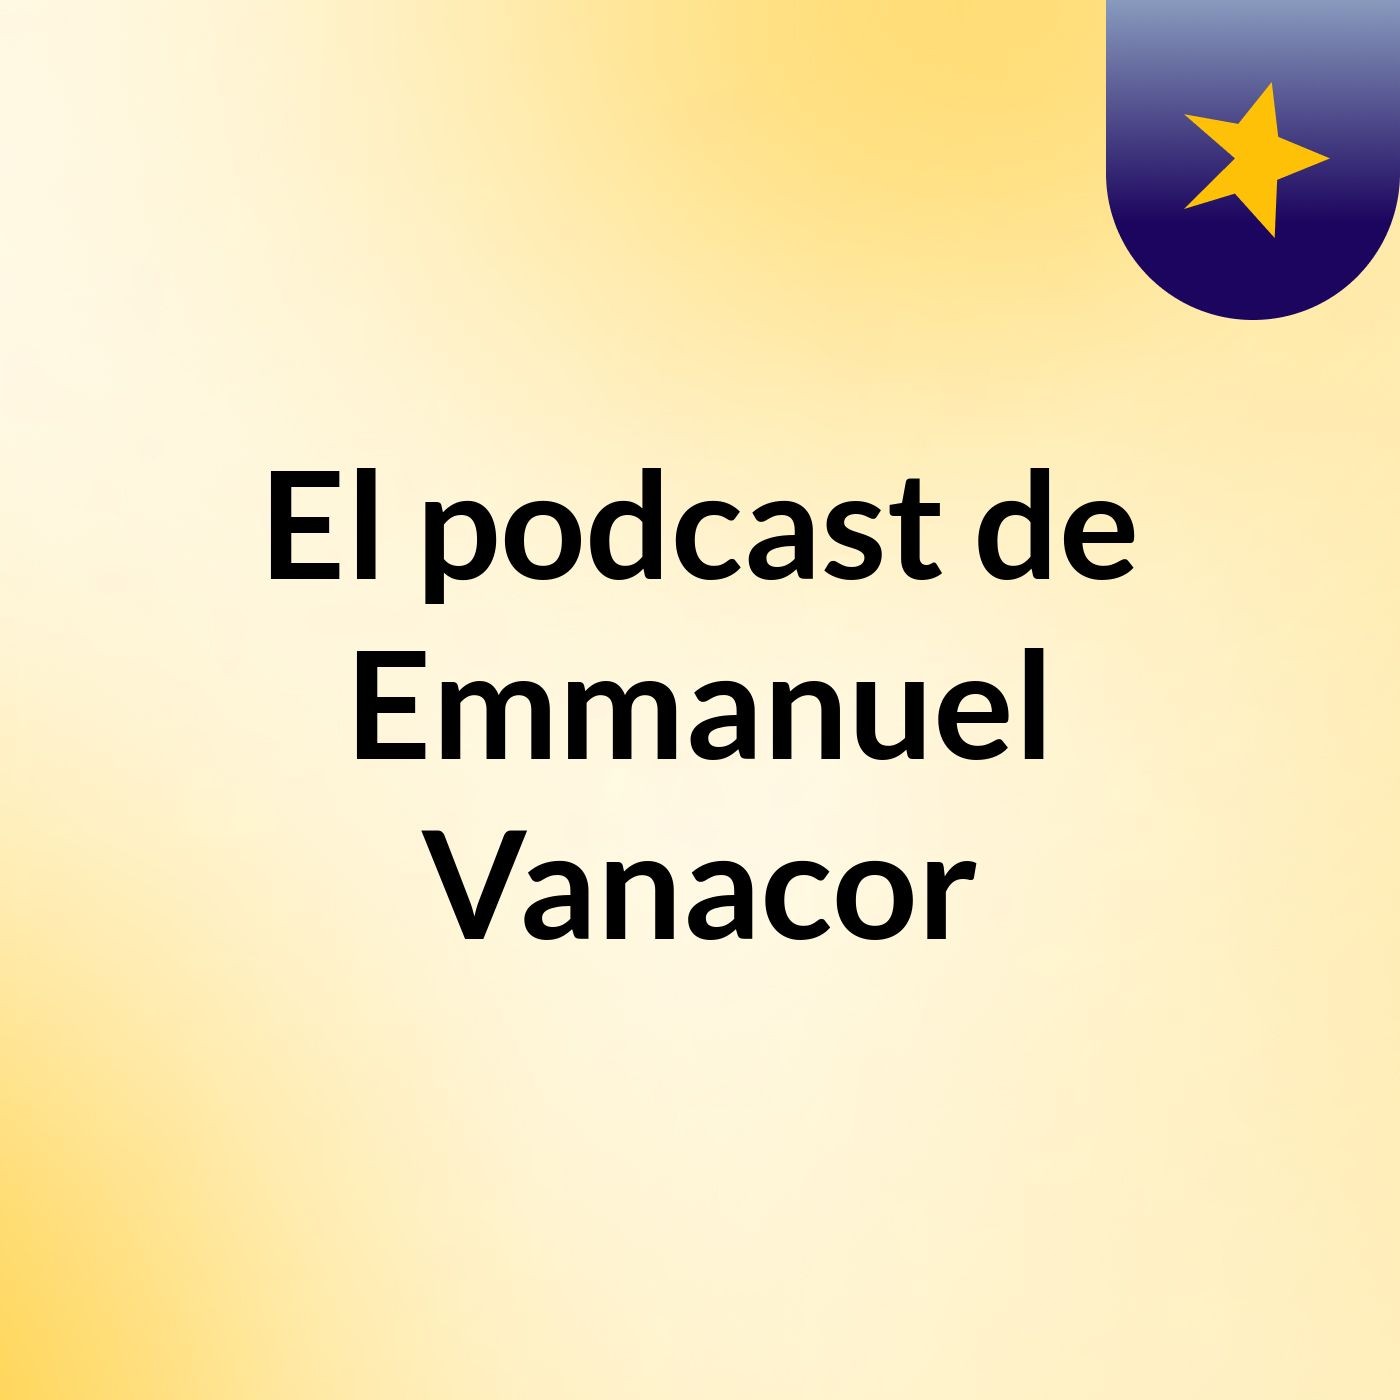 El podcast de Emmanuel Vanacor